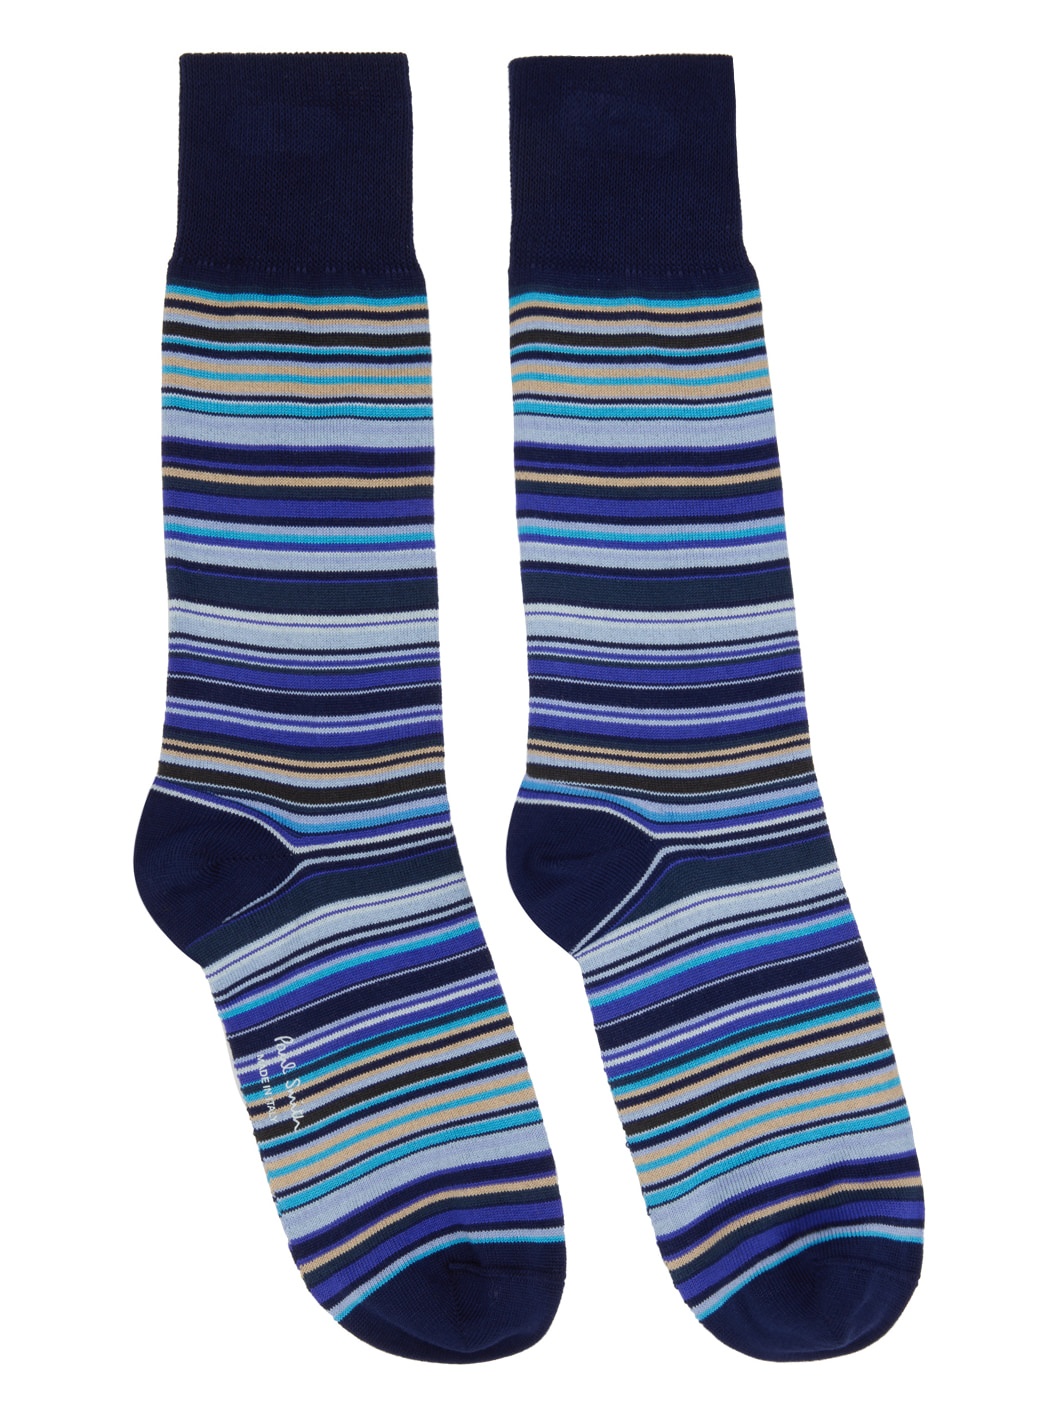 Three-Pack Multicolor Socks - 3